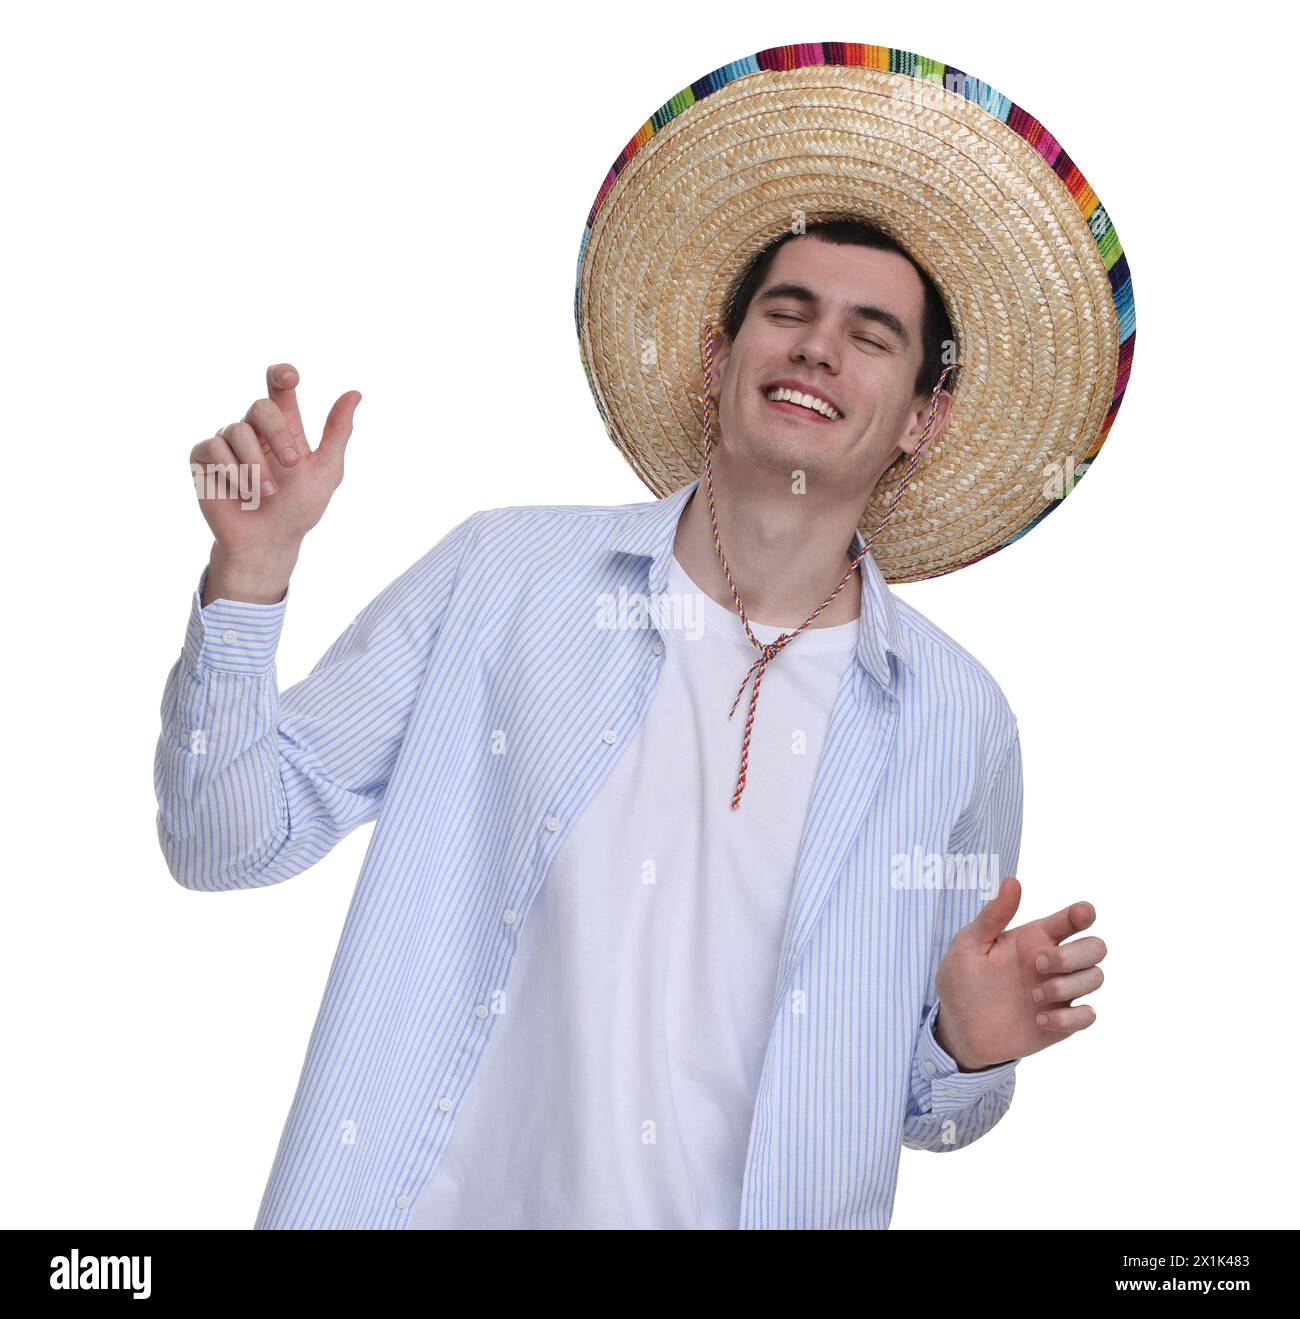 Jeune homme dans le chapeau sombrero mexicain dansant sur fond blanc Banque D'Images